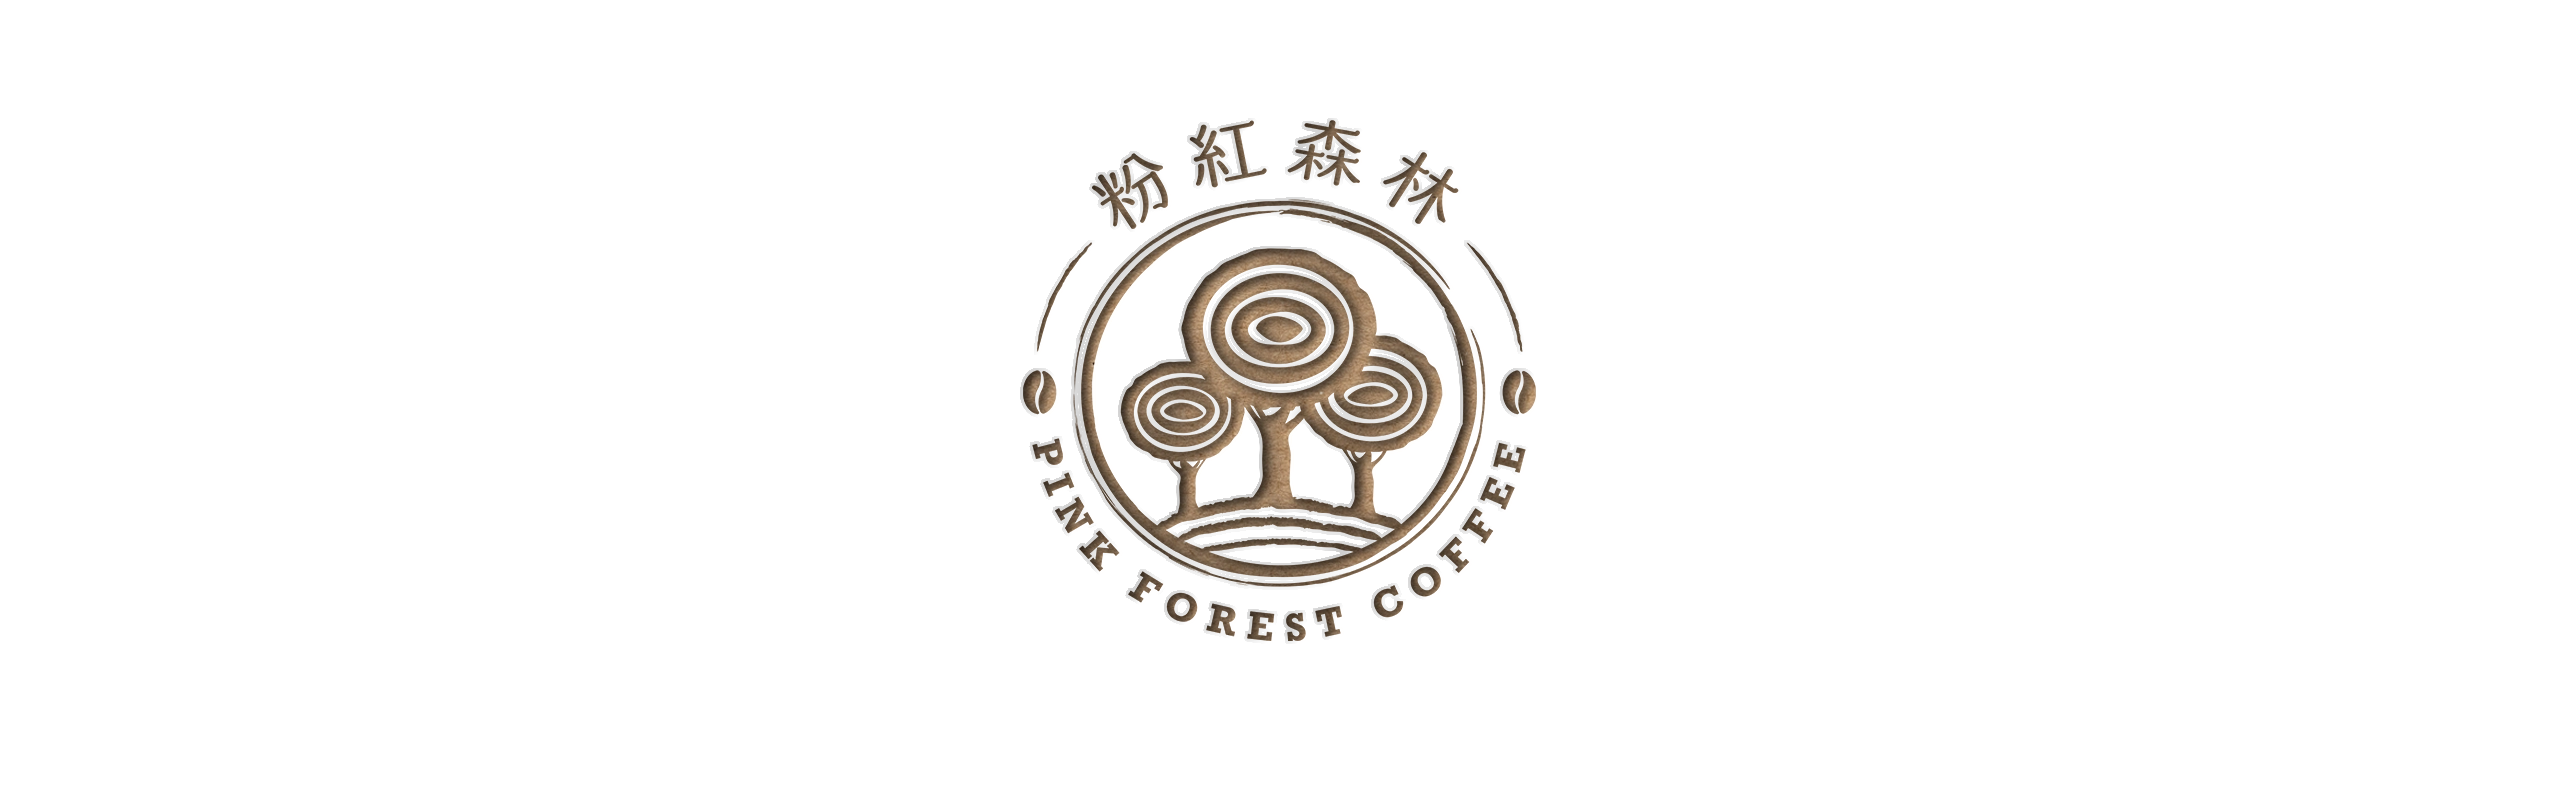 台北 粉紅森林咖啡生豆商 RWD形象官網/網站設計/平面設計/dm設計/型錄設計/展場設計 電腦版(1)